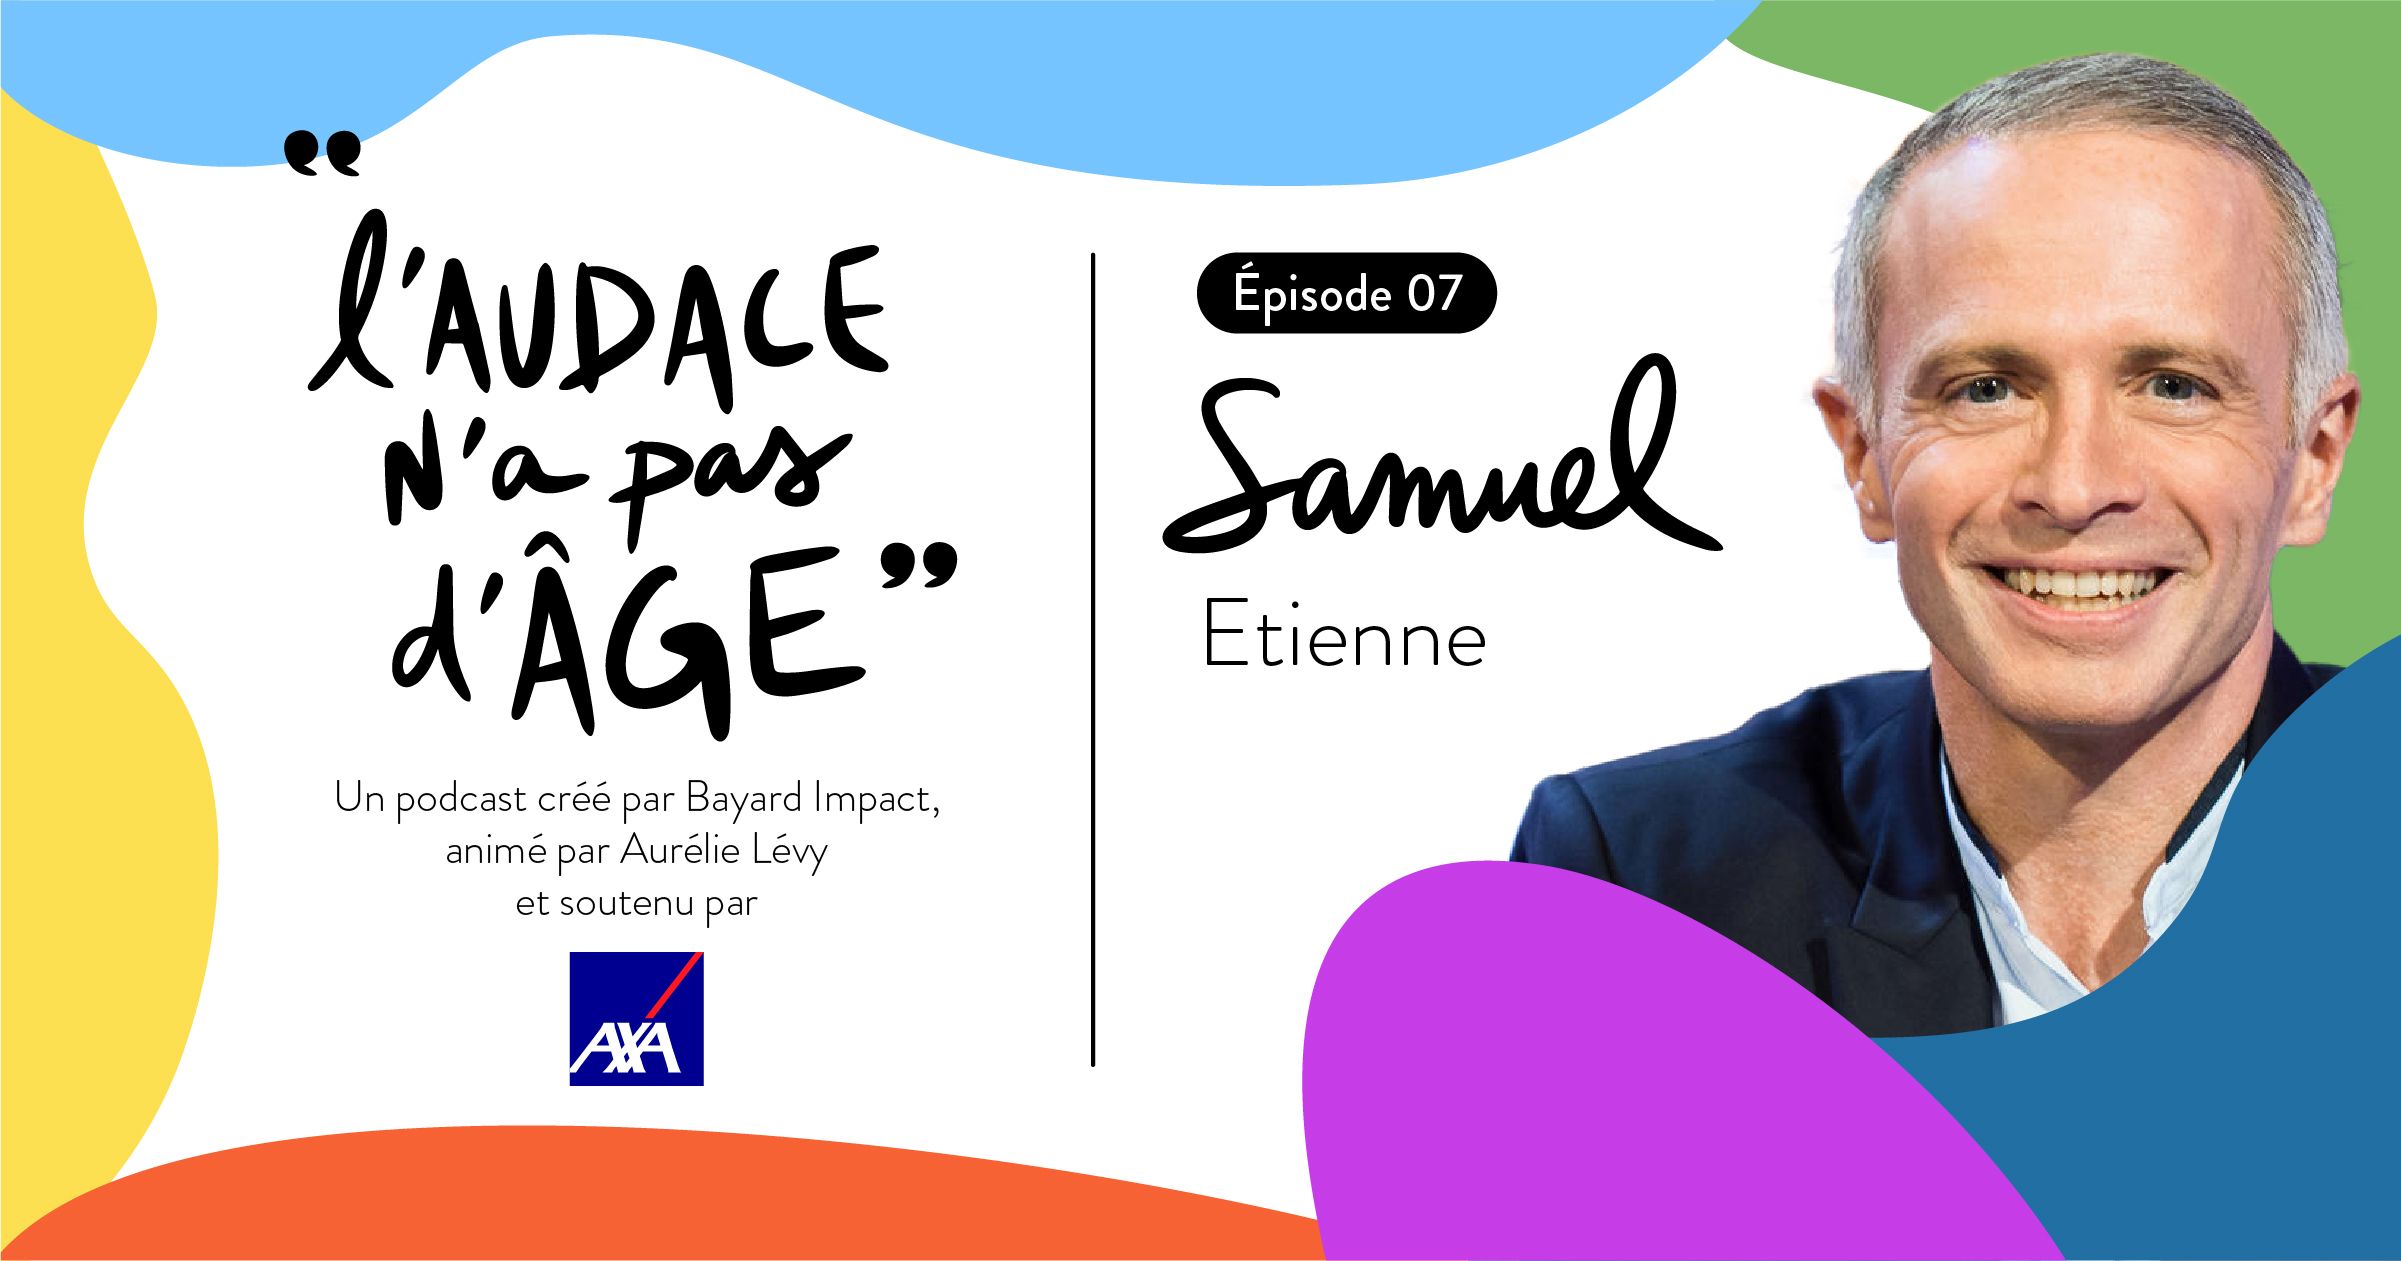 Podcast "L'Audace n'a pas d'Age", la saga continue avec Samuel Etienne